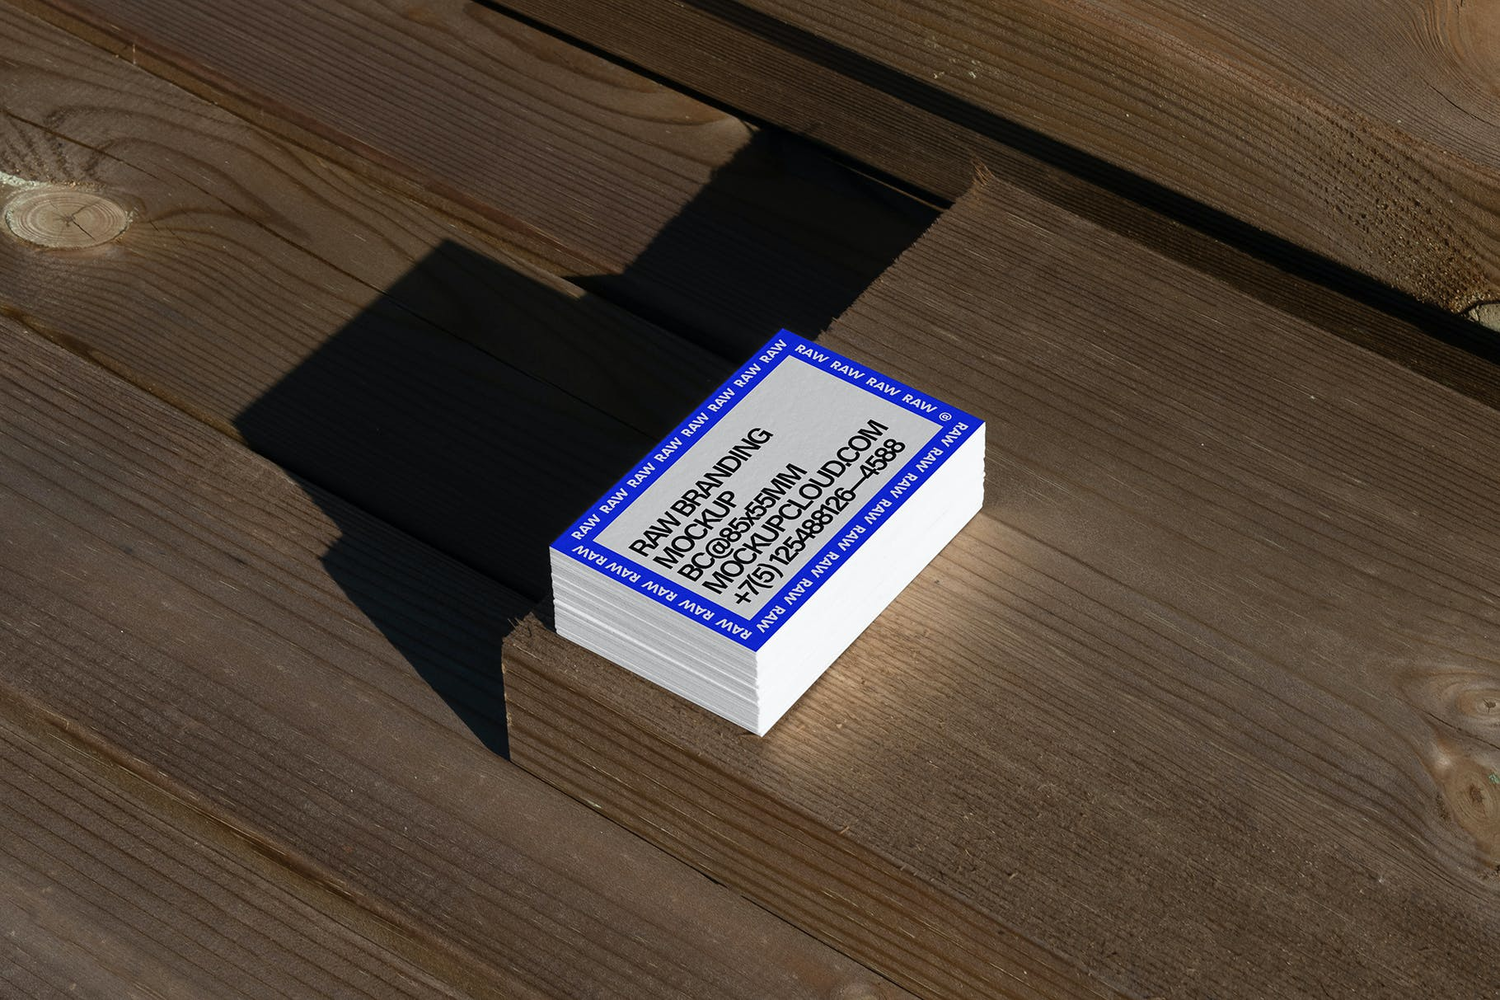 4750 21款质感光影工业风名片卡片设计作品贴图ps样机素材场景展示模板 Raw Business Cards Mockups@GOOODME.COM